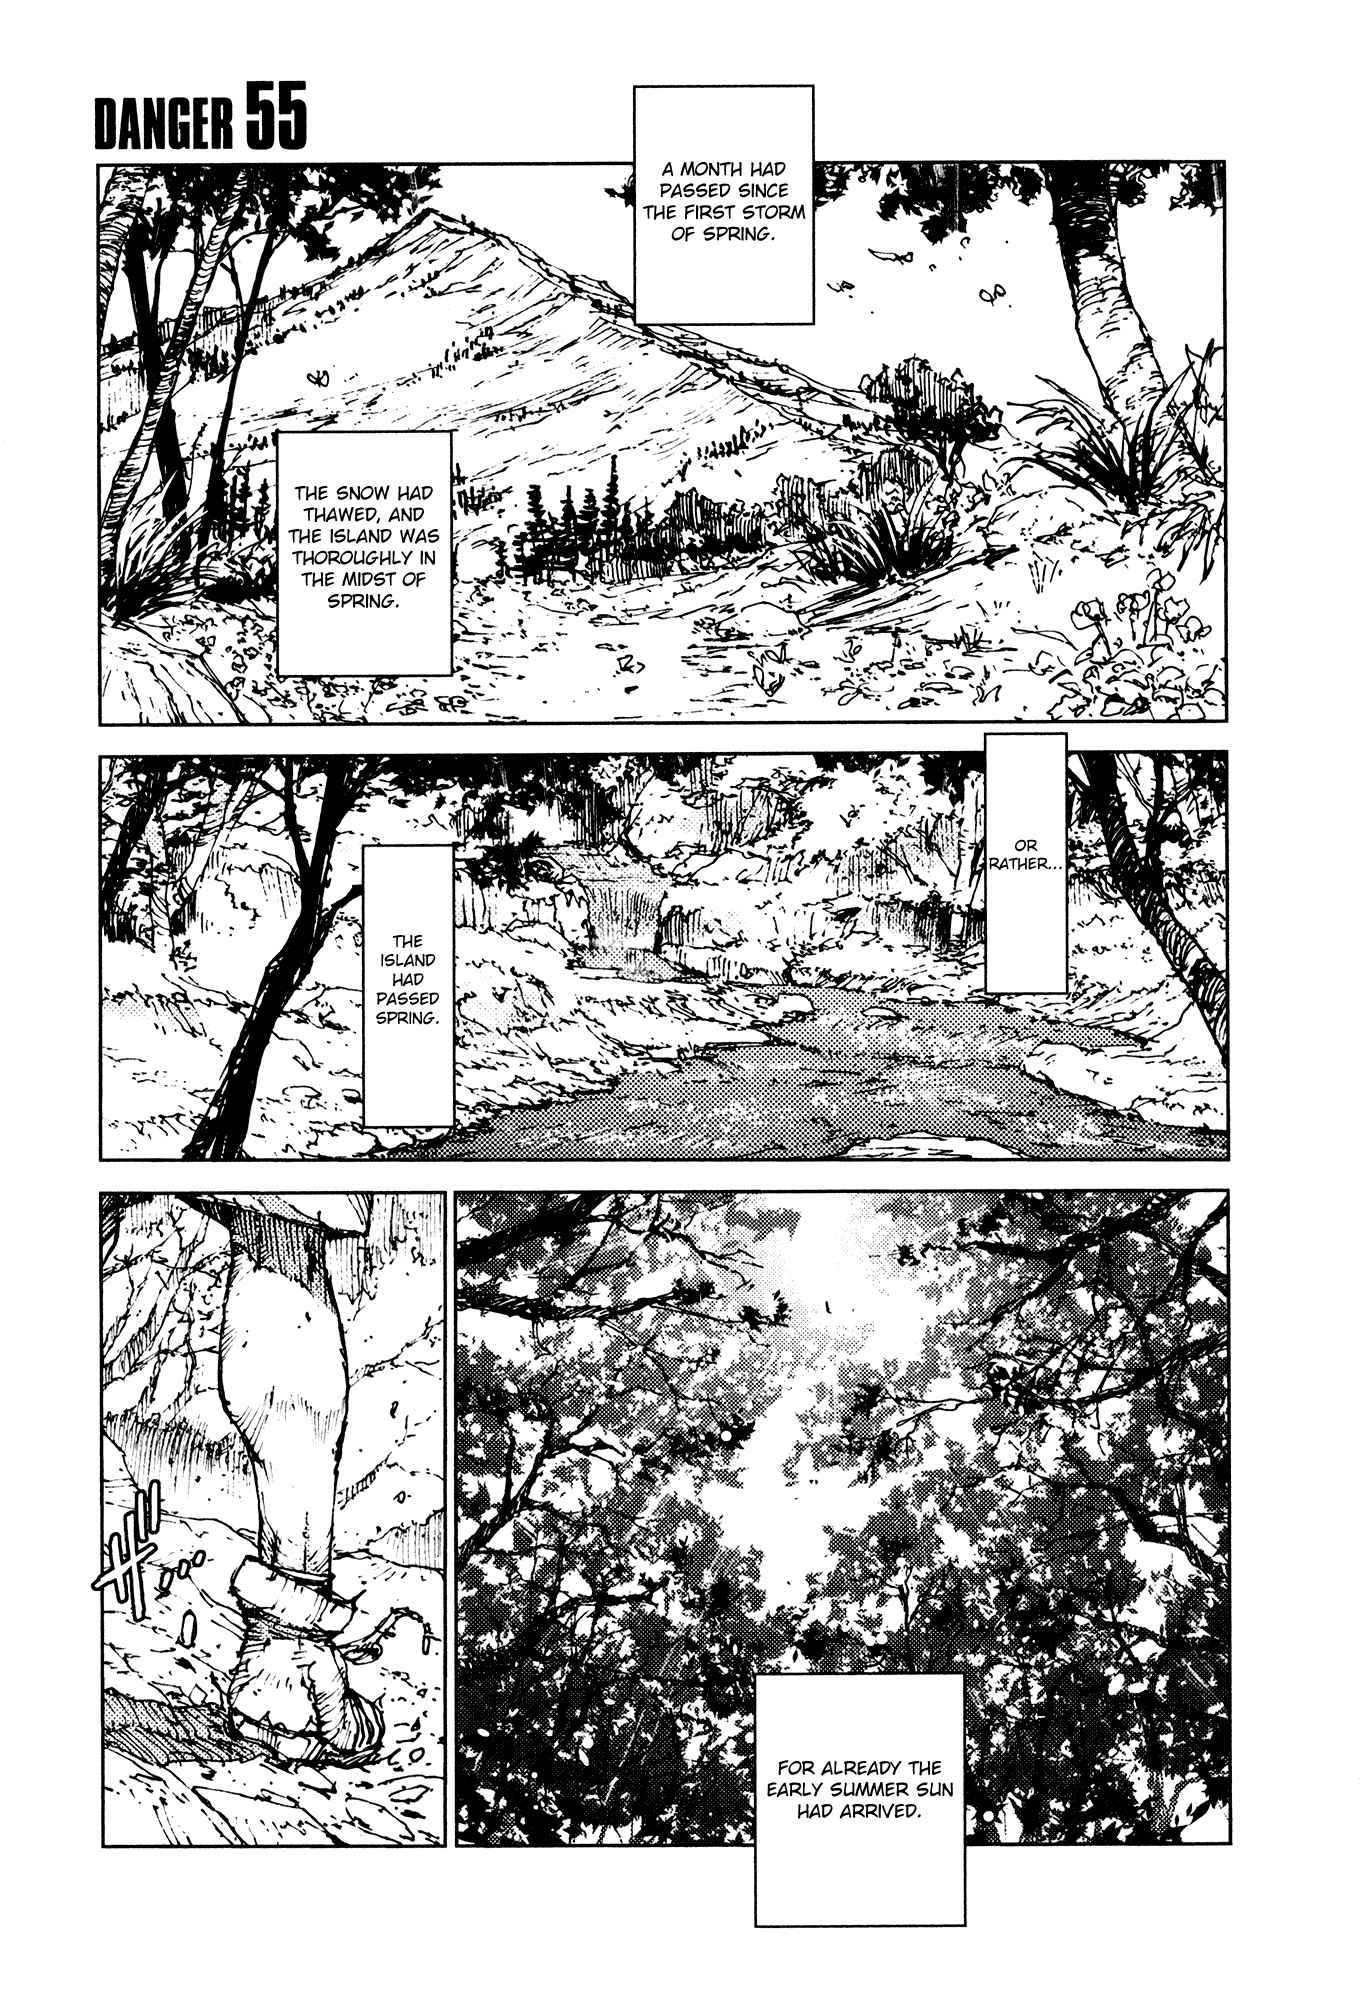 Survival: Shounen S no Kiroku Vol.3 Ch.55